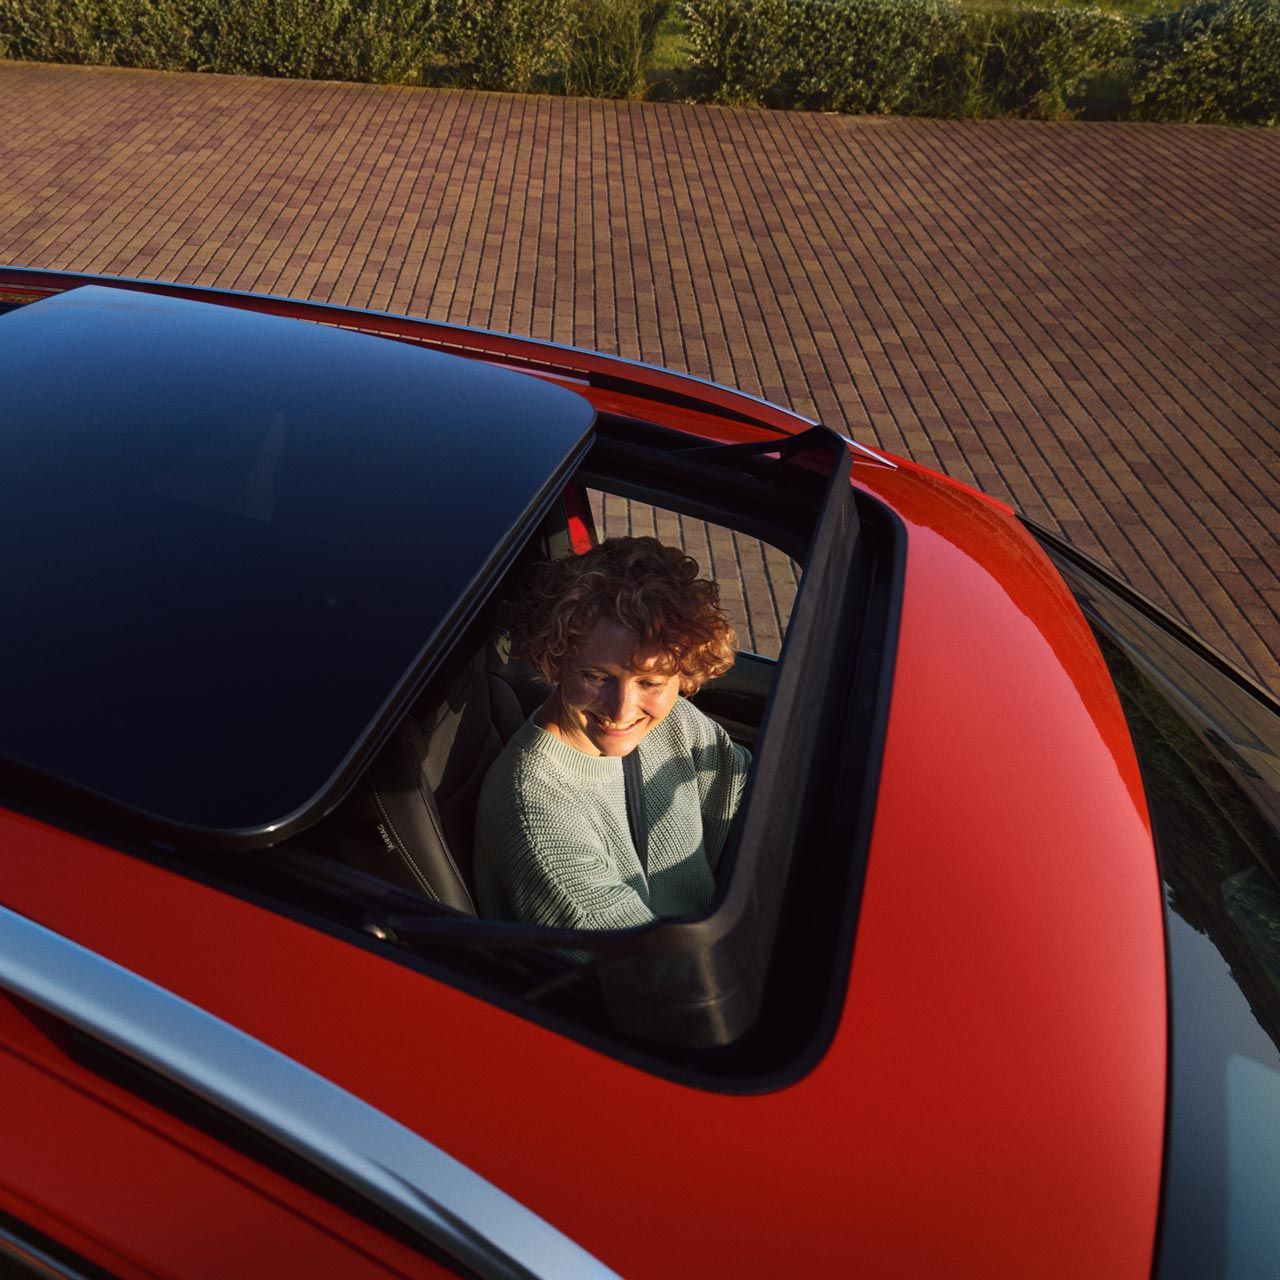 Blick in den VW Tiguan durch das Panoramadach, im Auto sitzt eine Frau